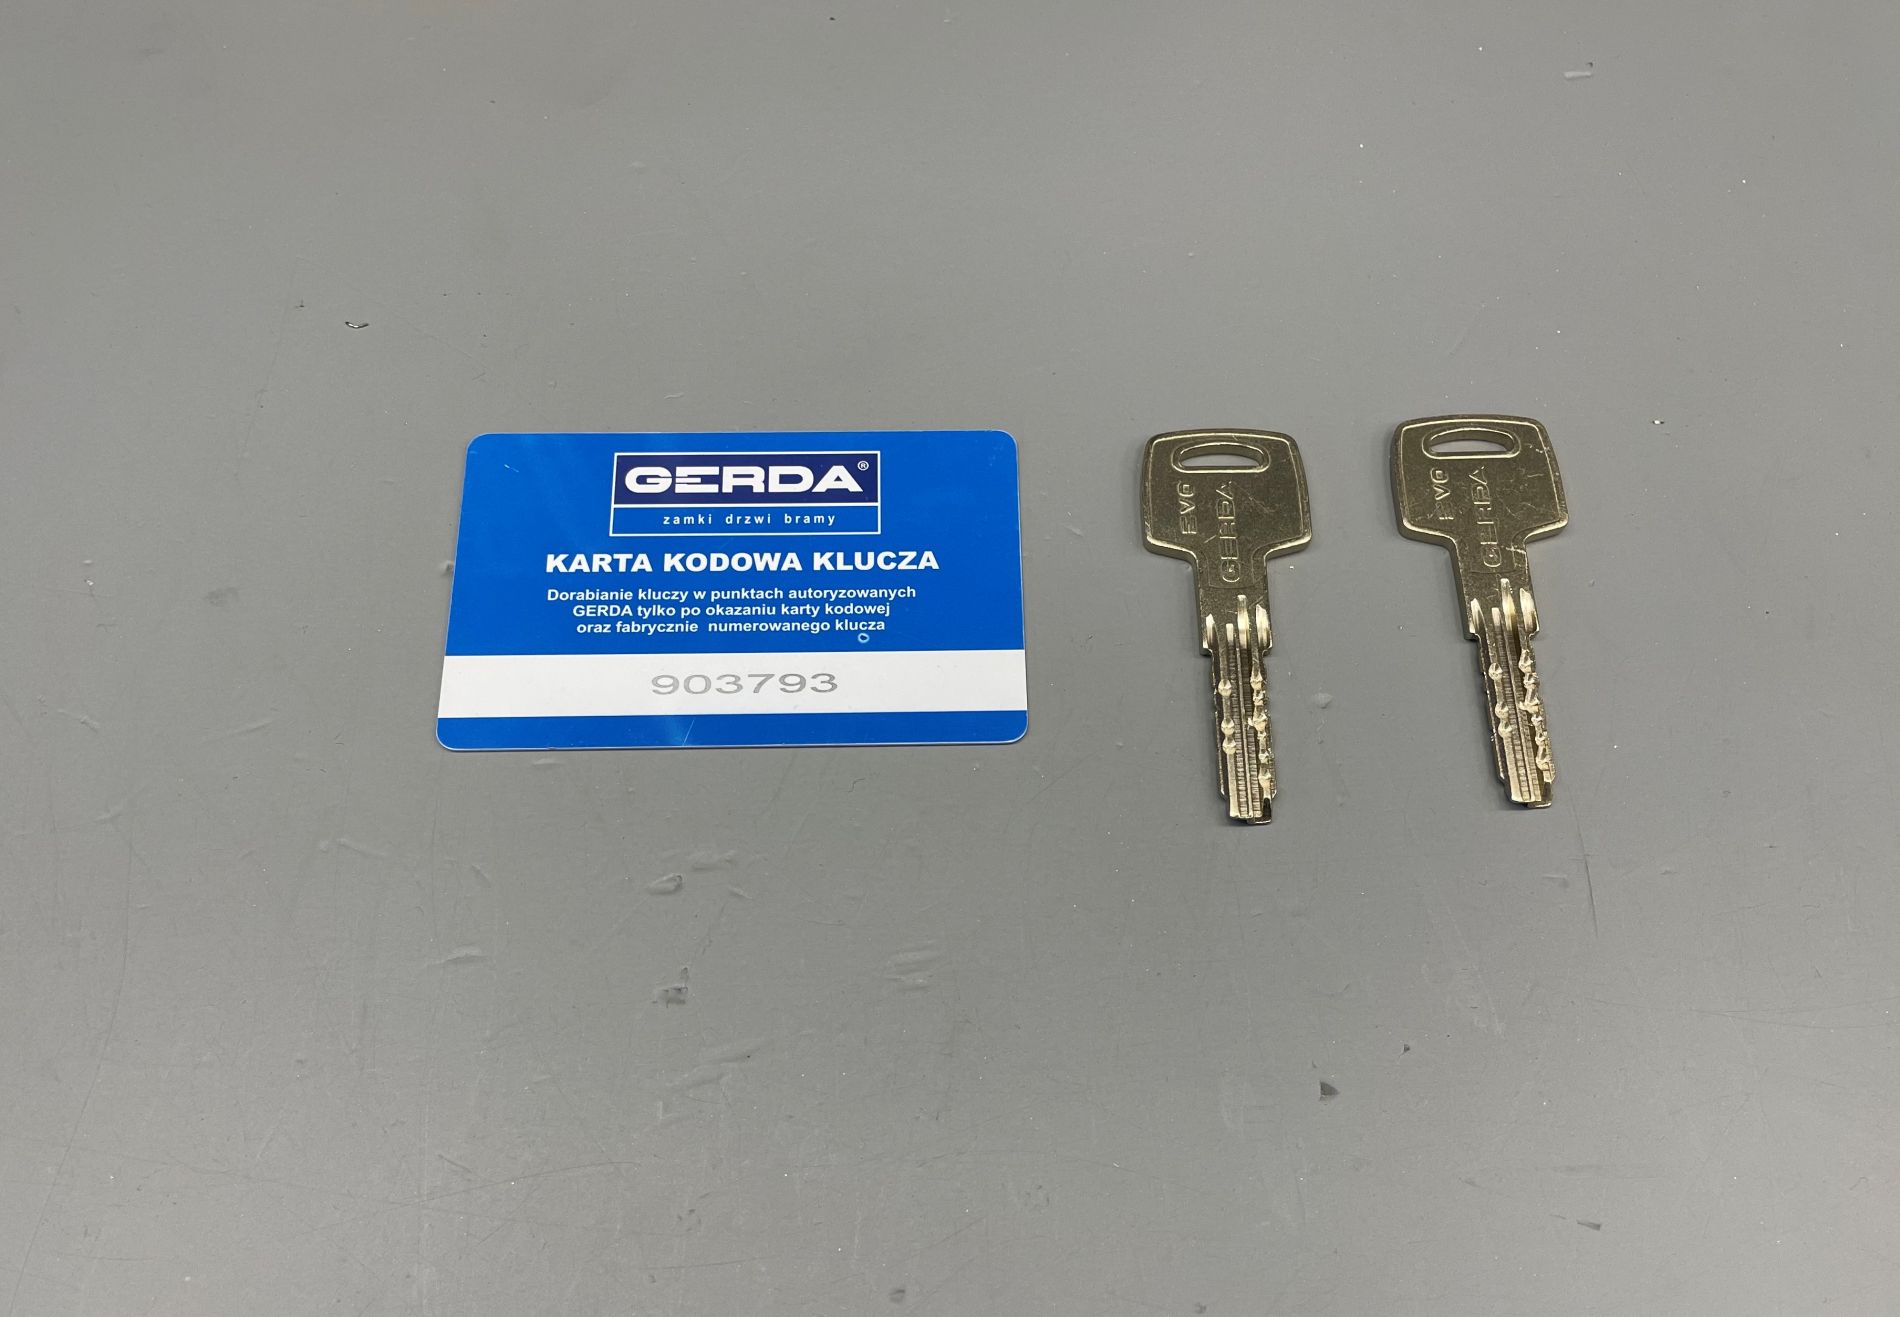 Jak dorobić klucz Gerda Evo na podstawie kodu z karty kodowej?